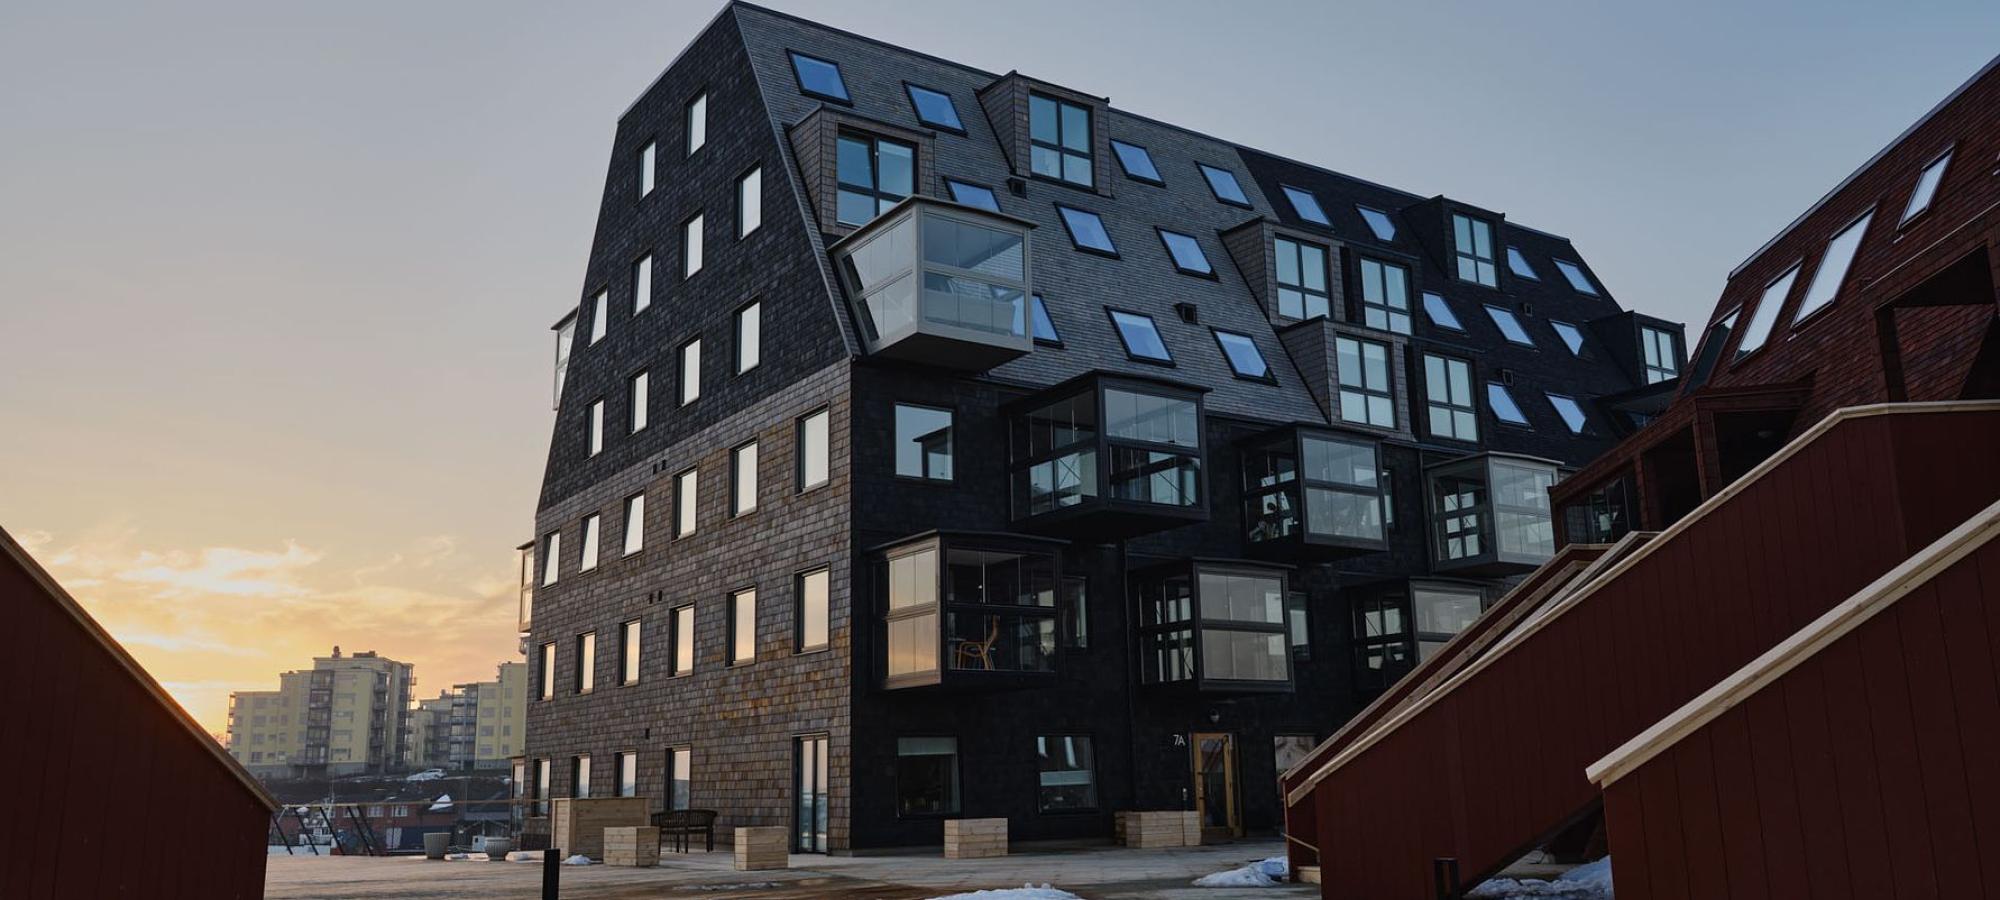 JSB:s projekt, Kilströms Kaj i Karlskrona, har blivit nominerat till det prestigefyllda Träpriset, som delas ut av Branschorganisationen Svensk Trä vart fjärde år.